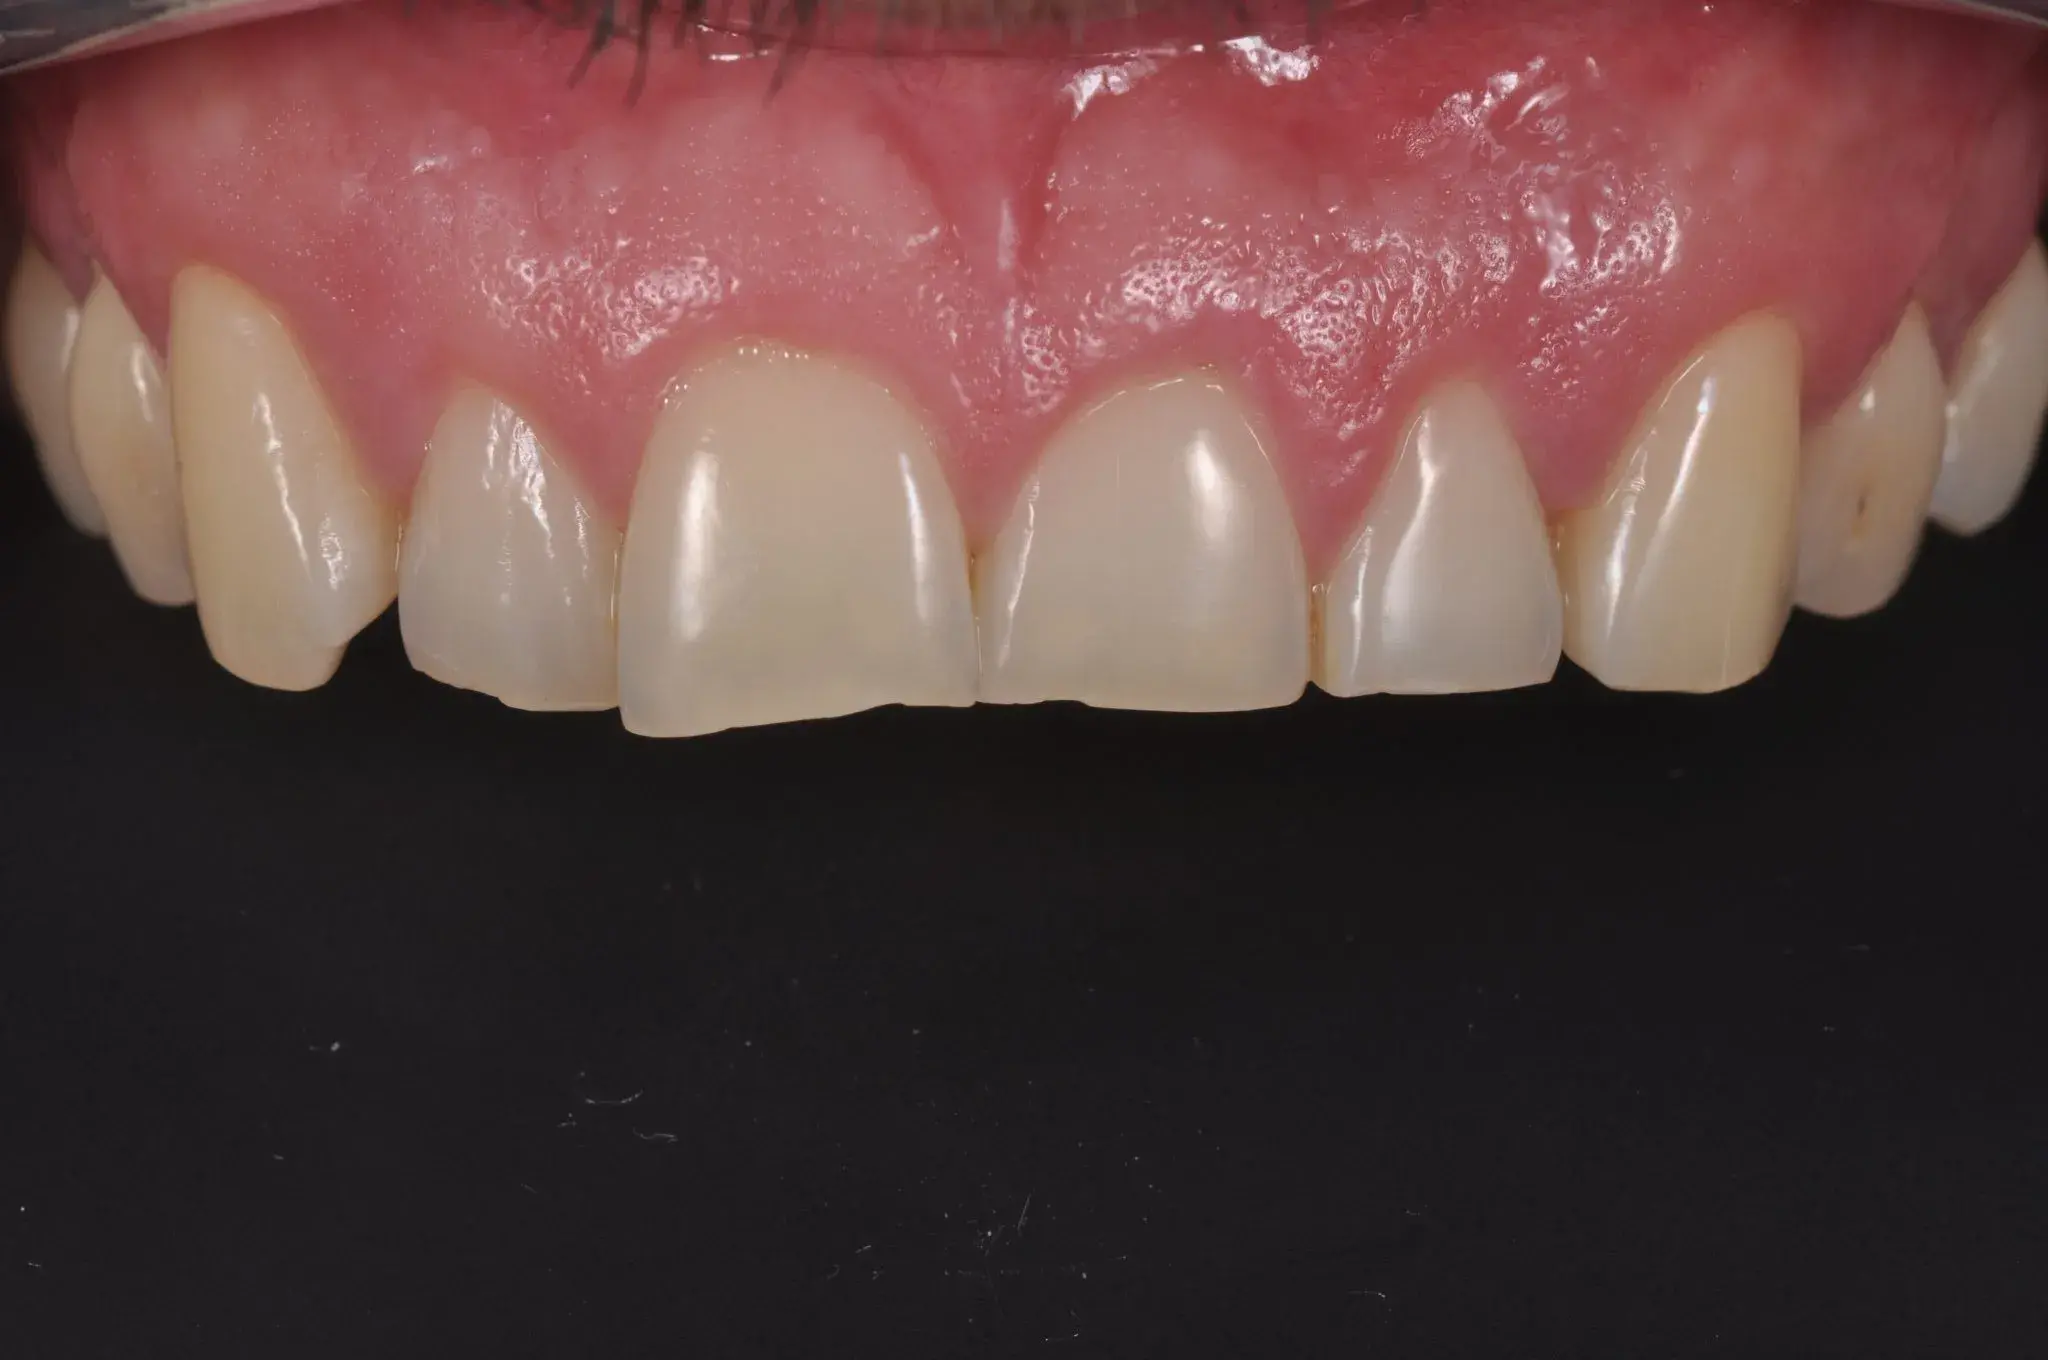 Пришеечная линия асимметрична из-за расположения зубов.